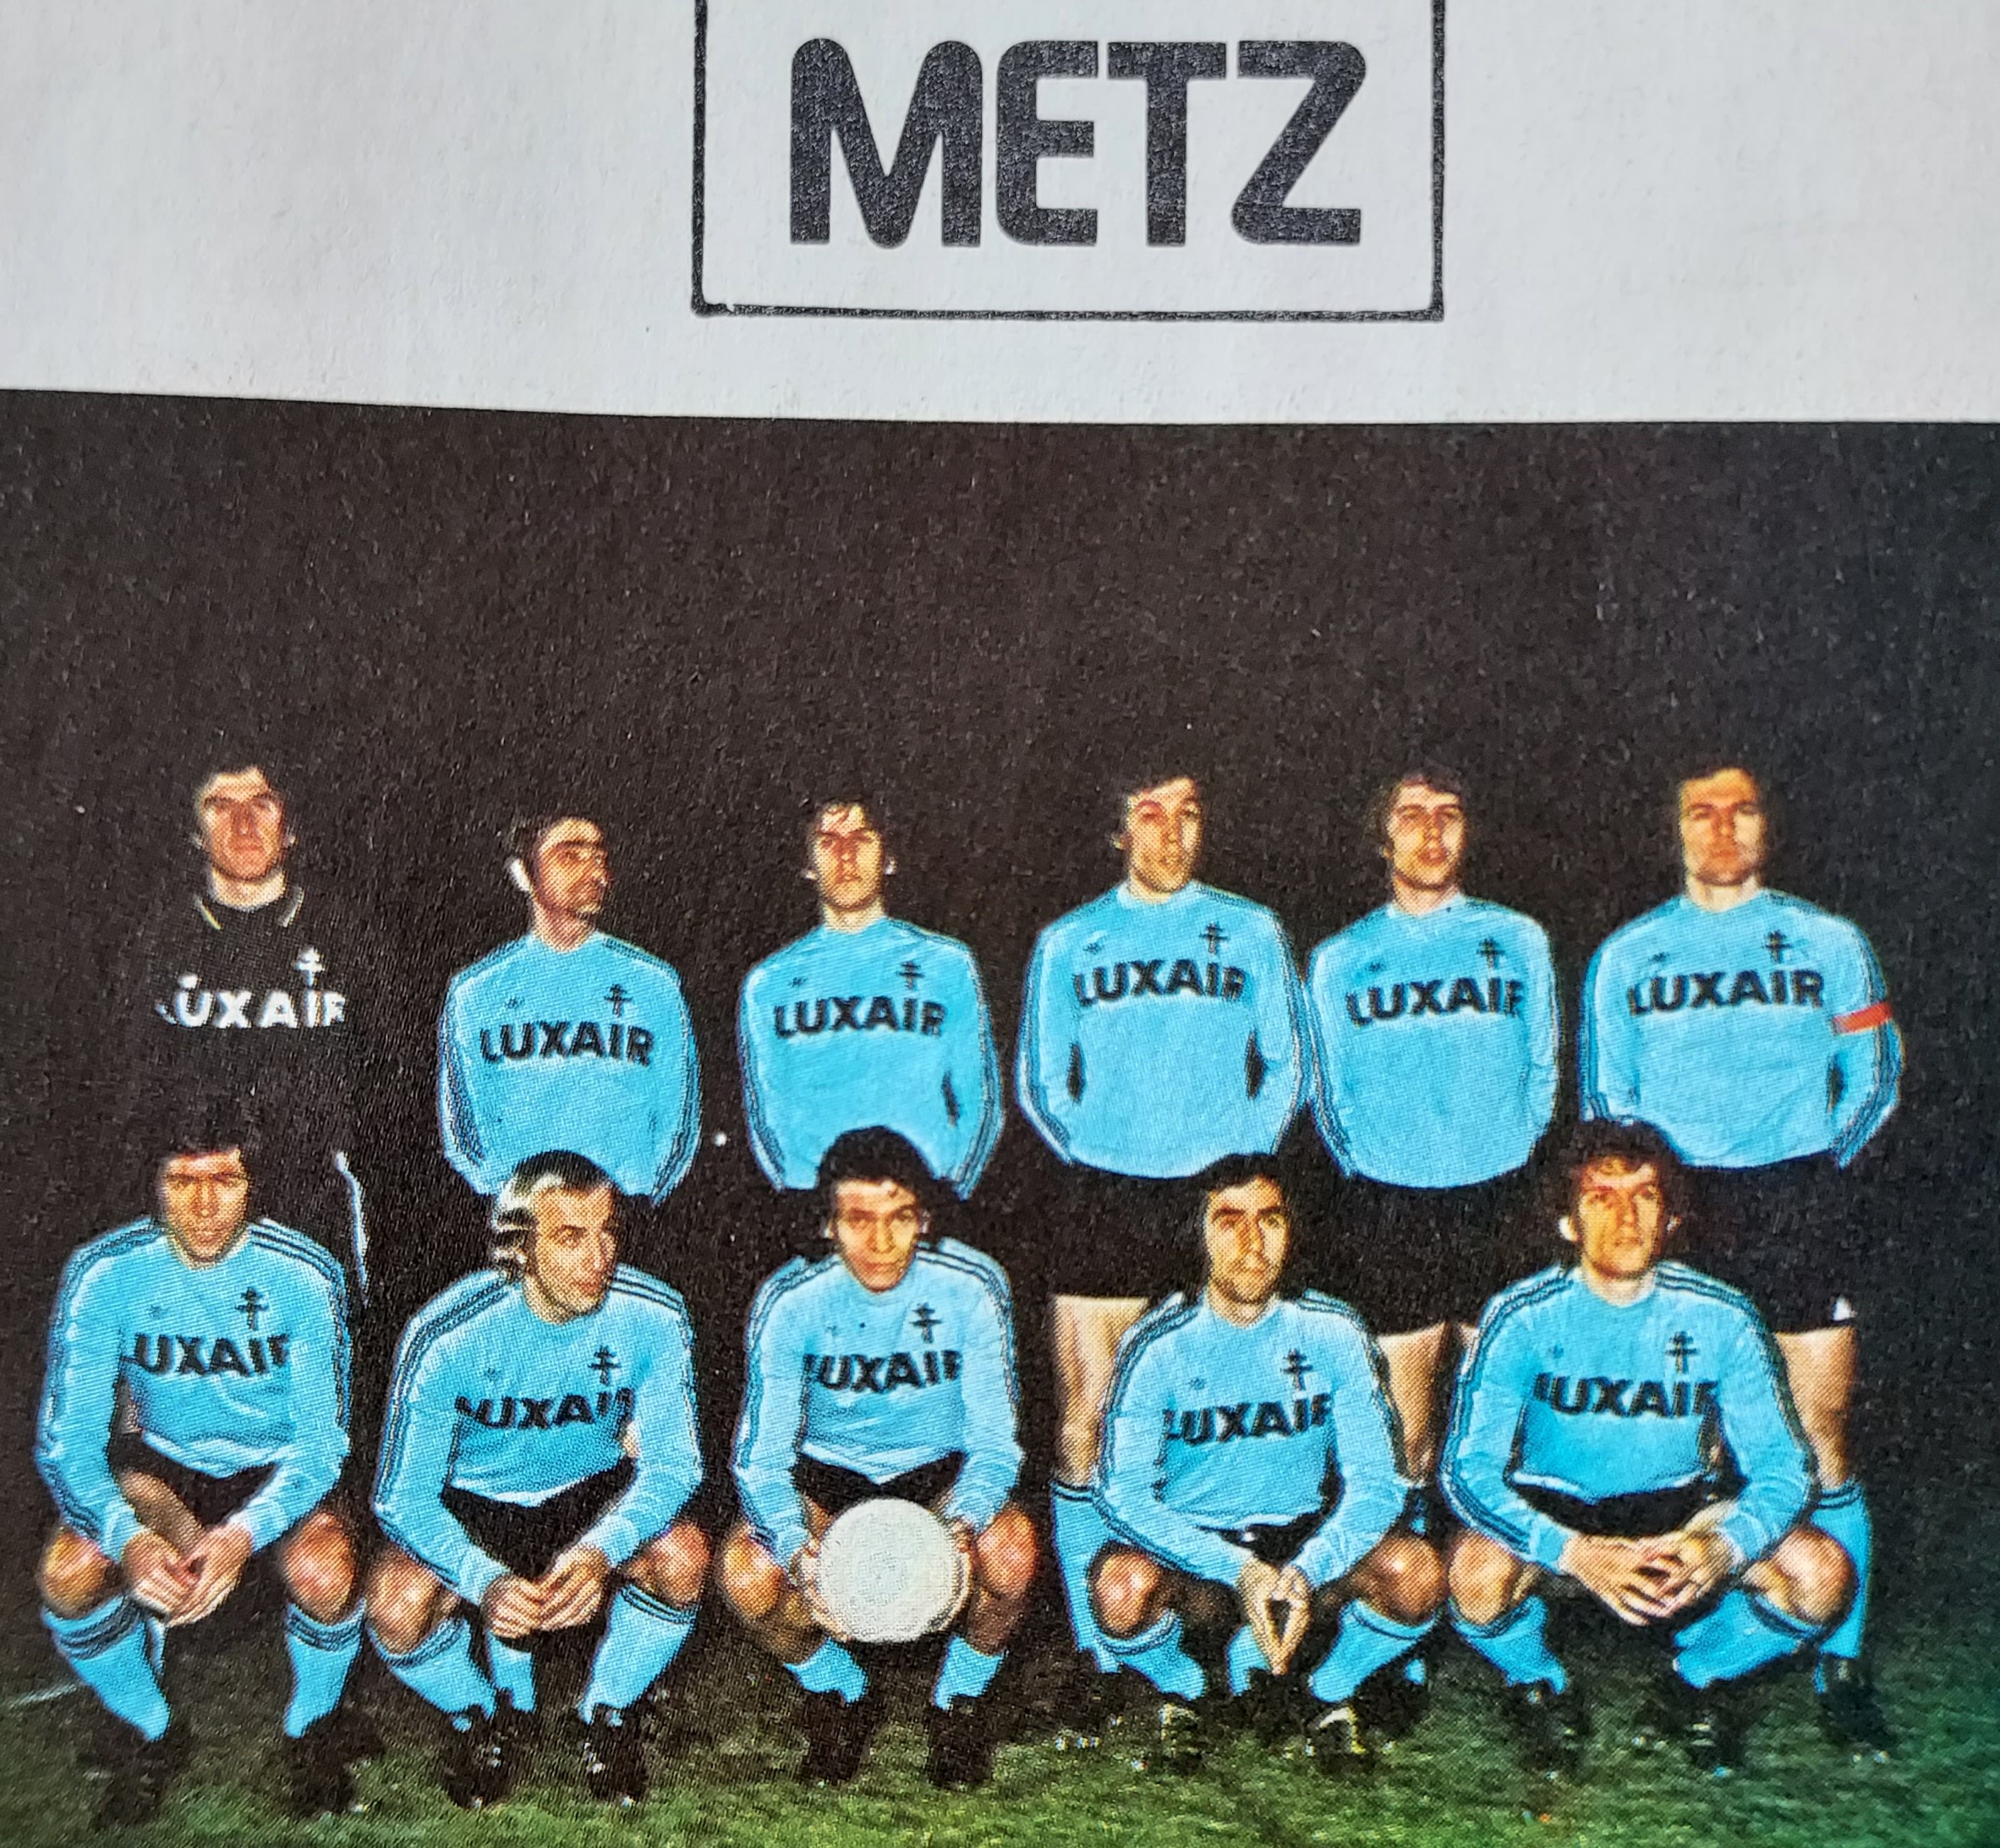 Passé par Schalke 04 et Charleroi, il est adoré par le FC Metz !